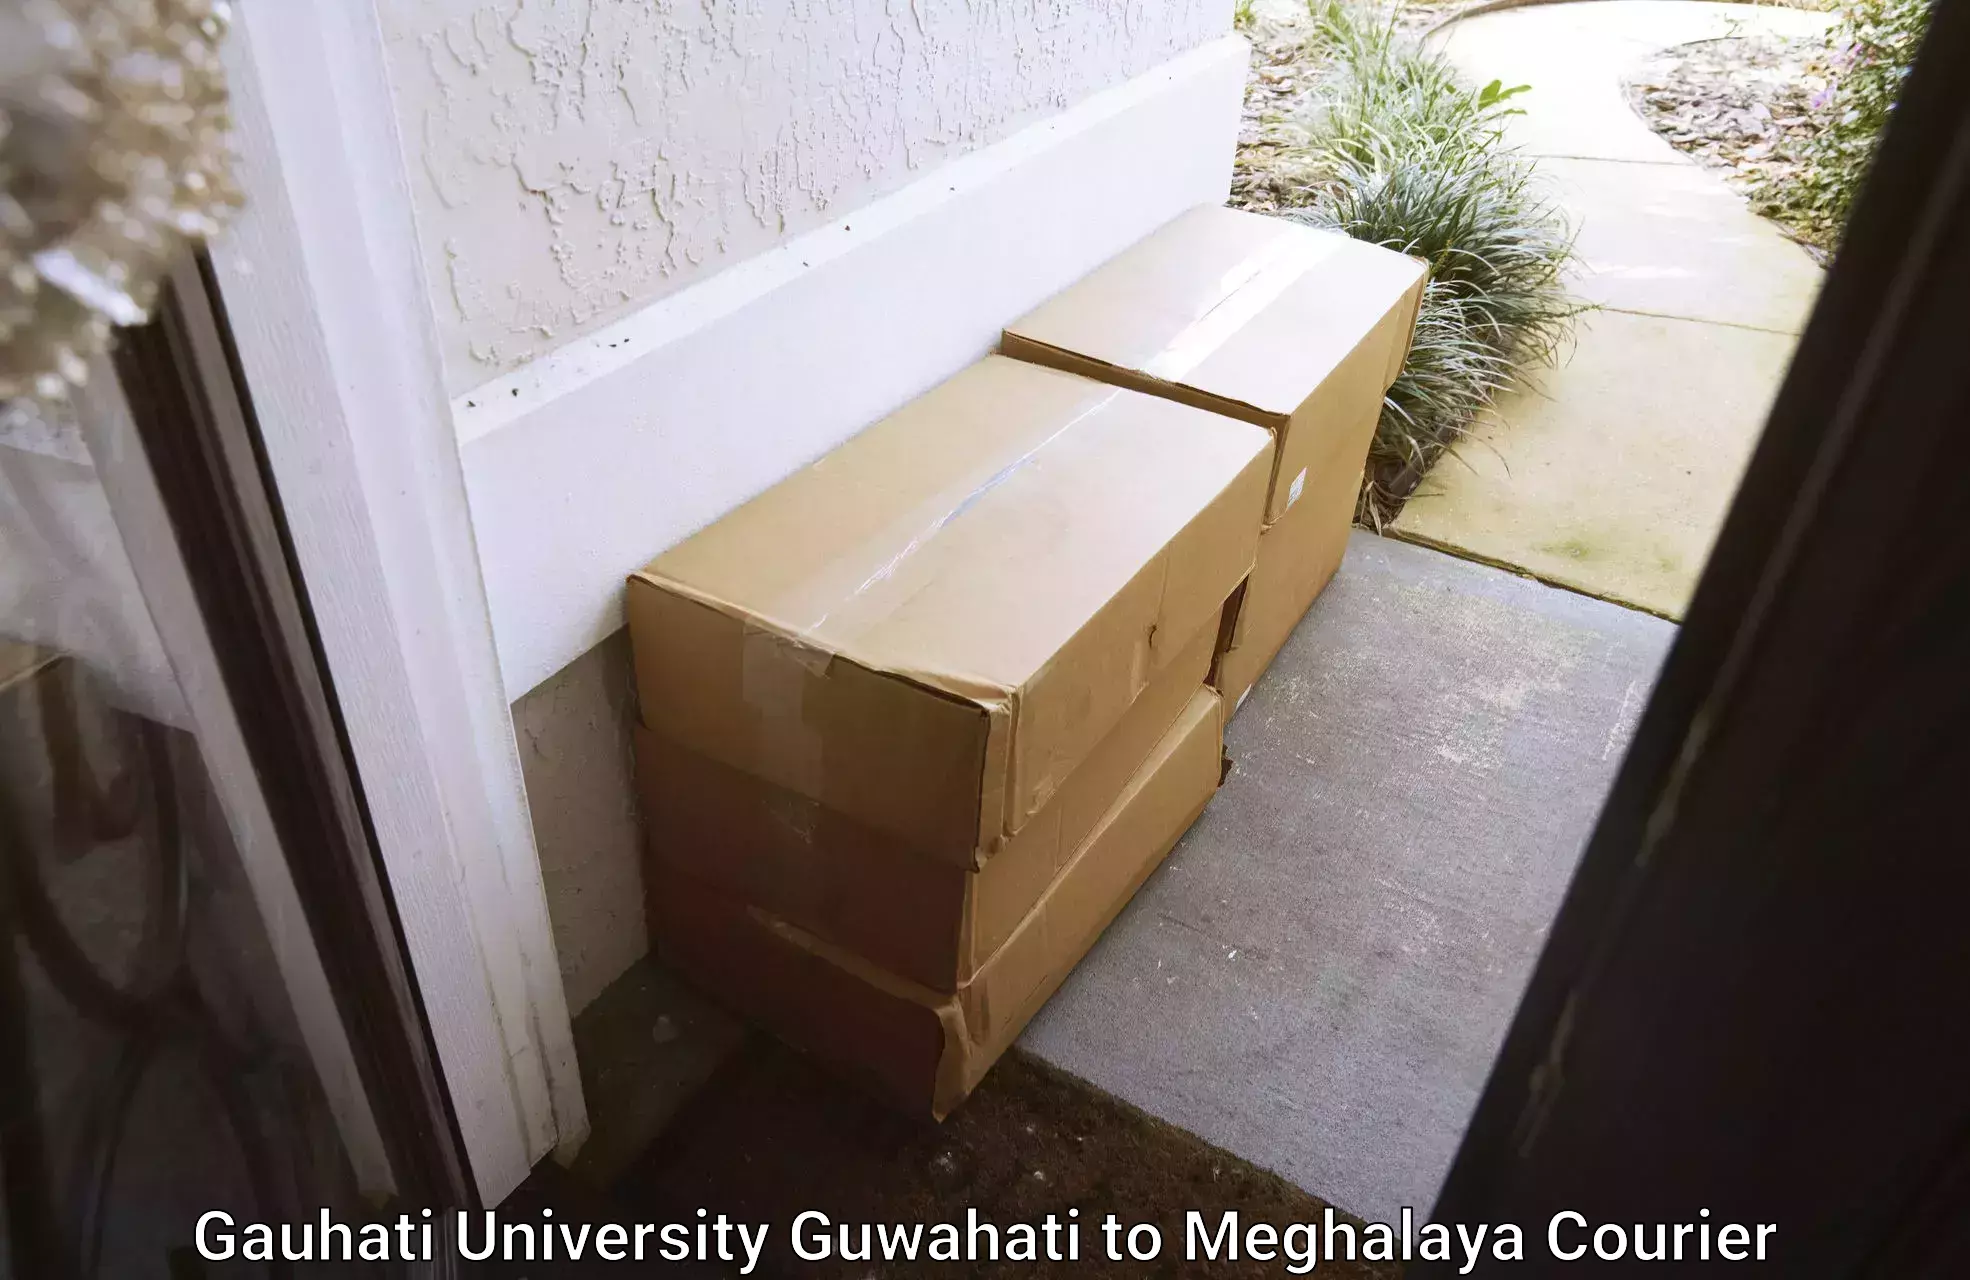 Custom courier packaging Gauhati University Guwahati to Cherrapunji